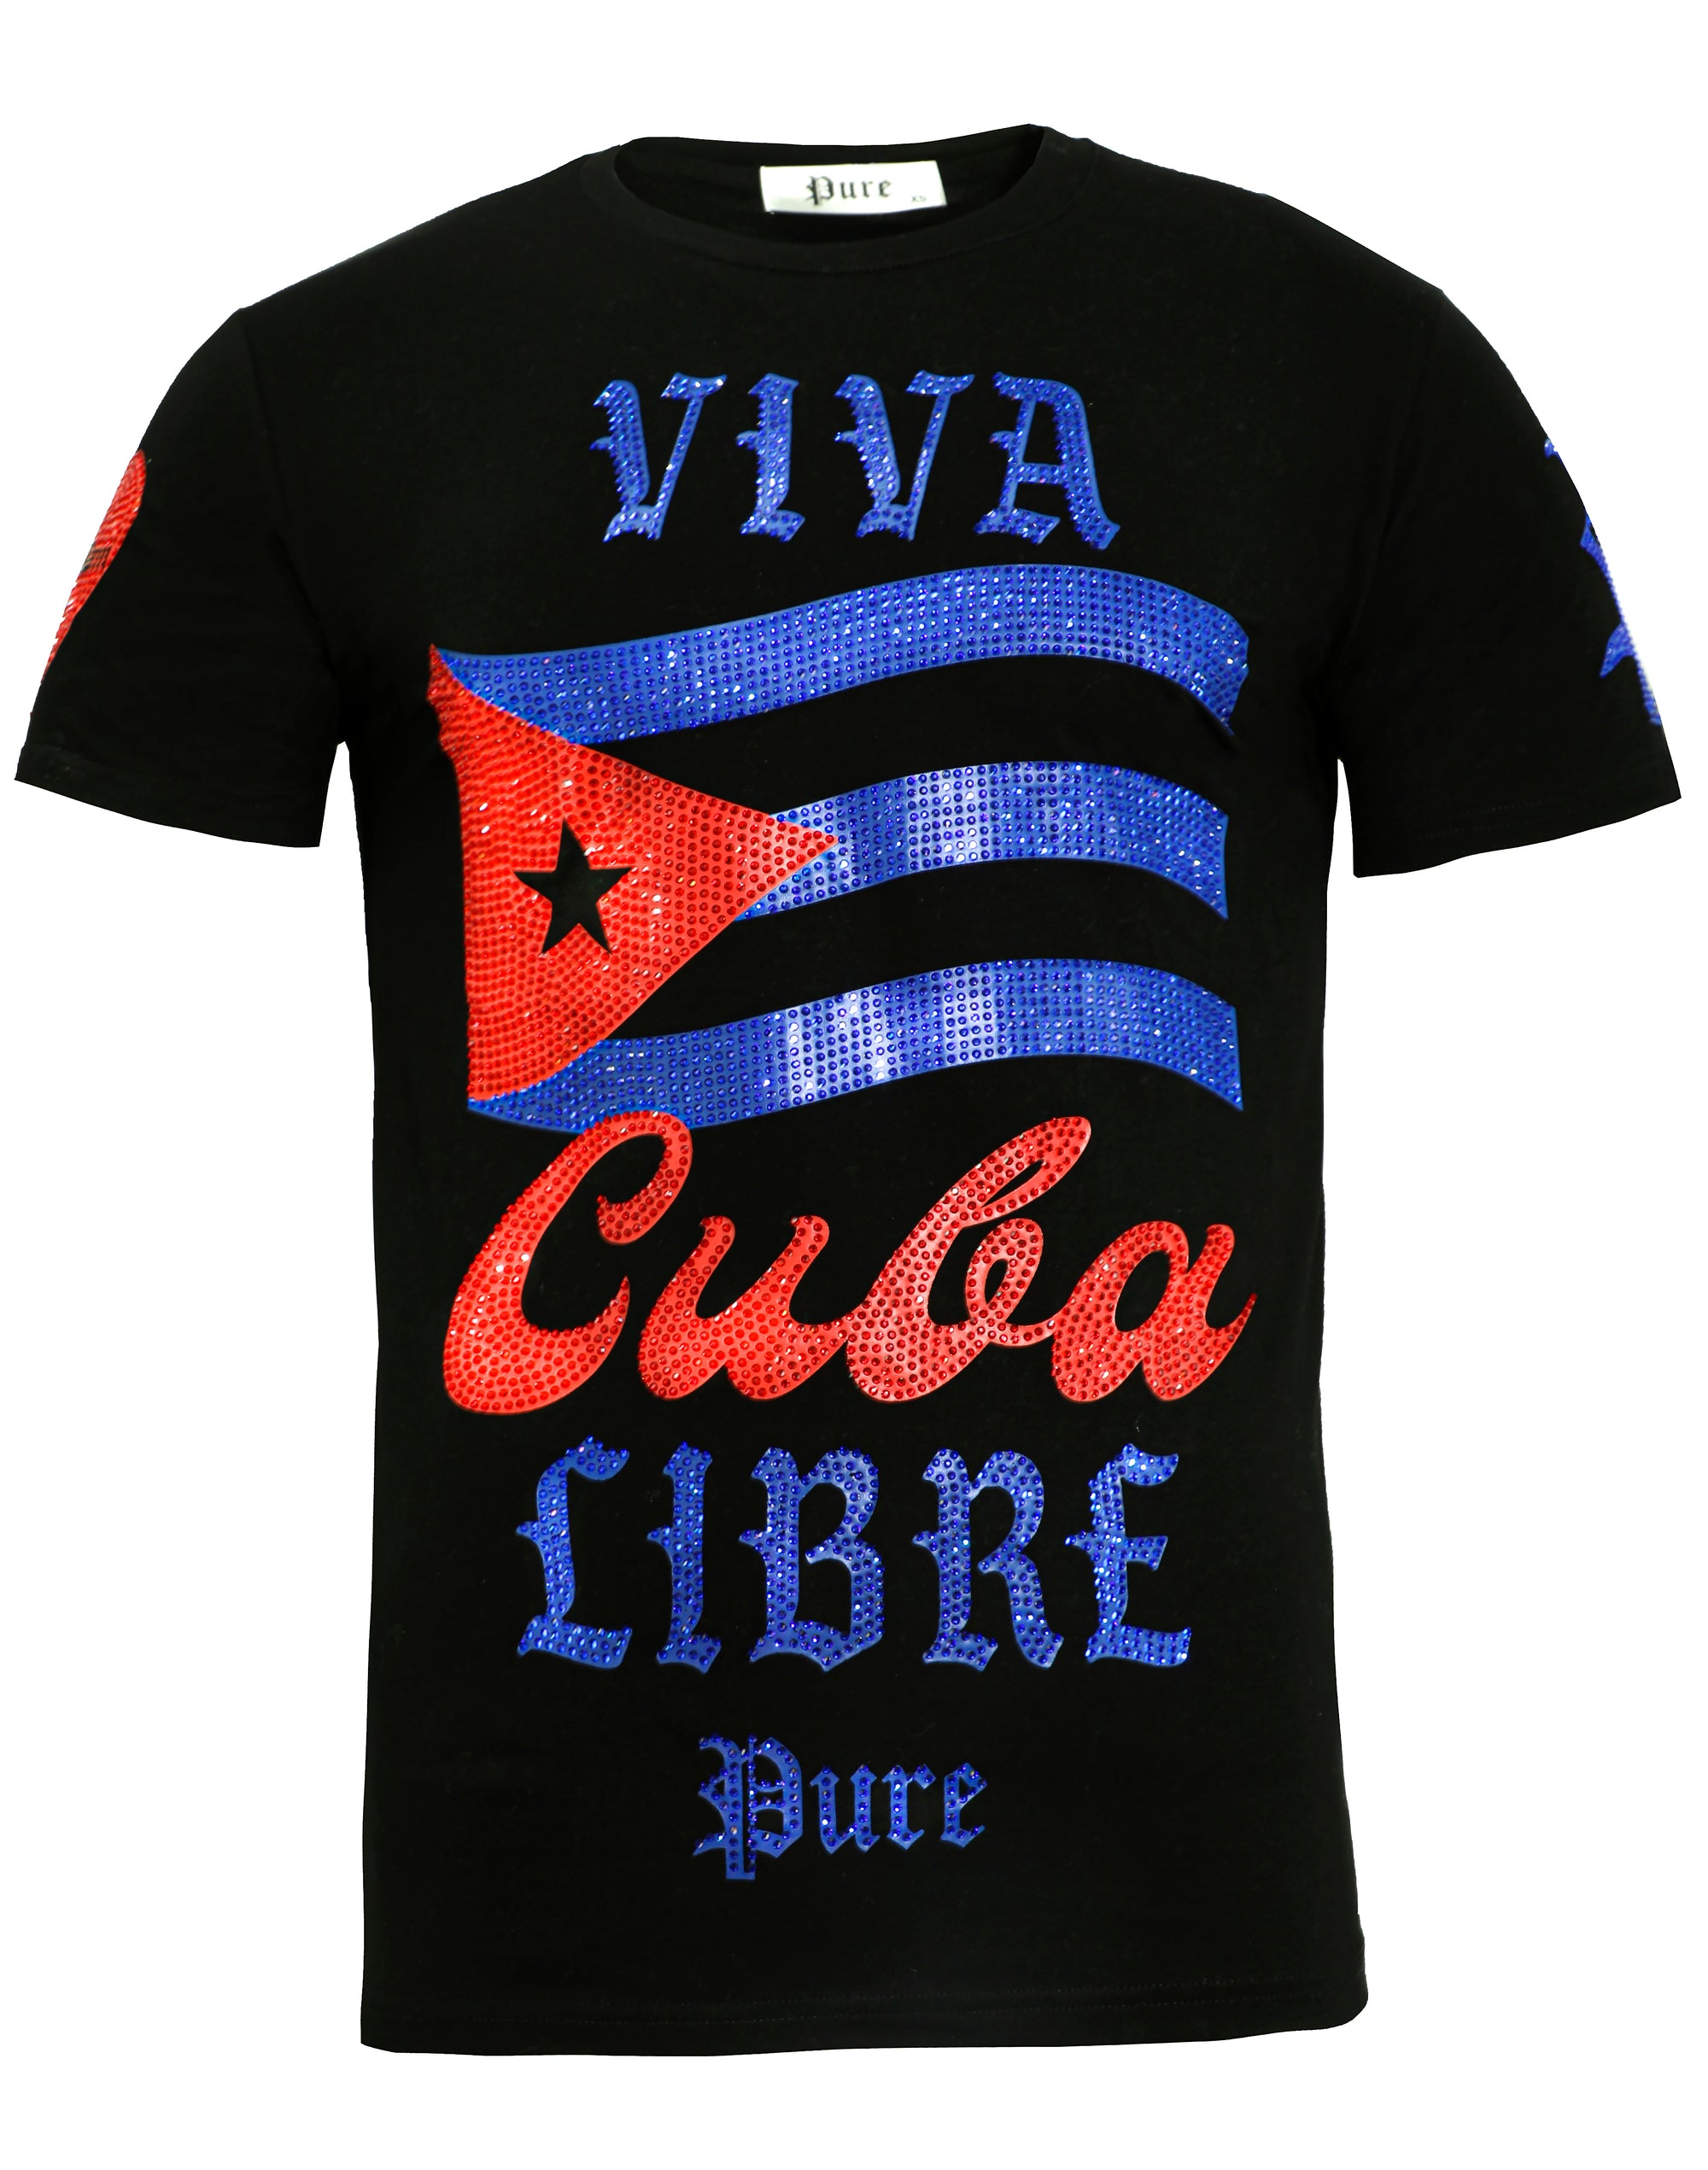 Viva La Cuba Libre-Black